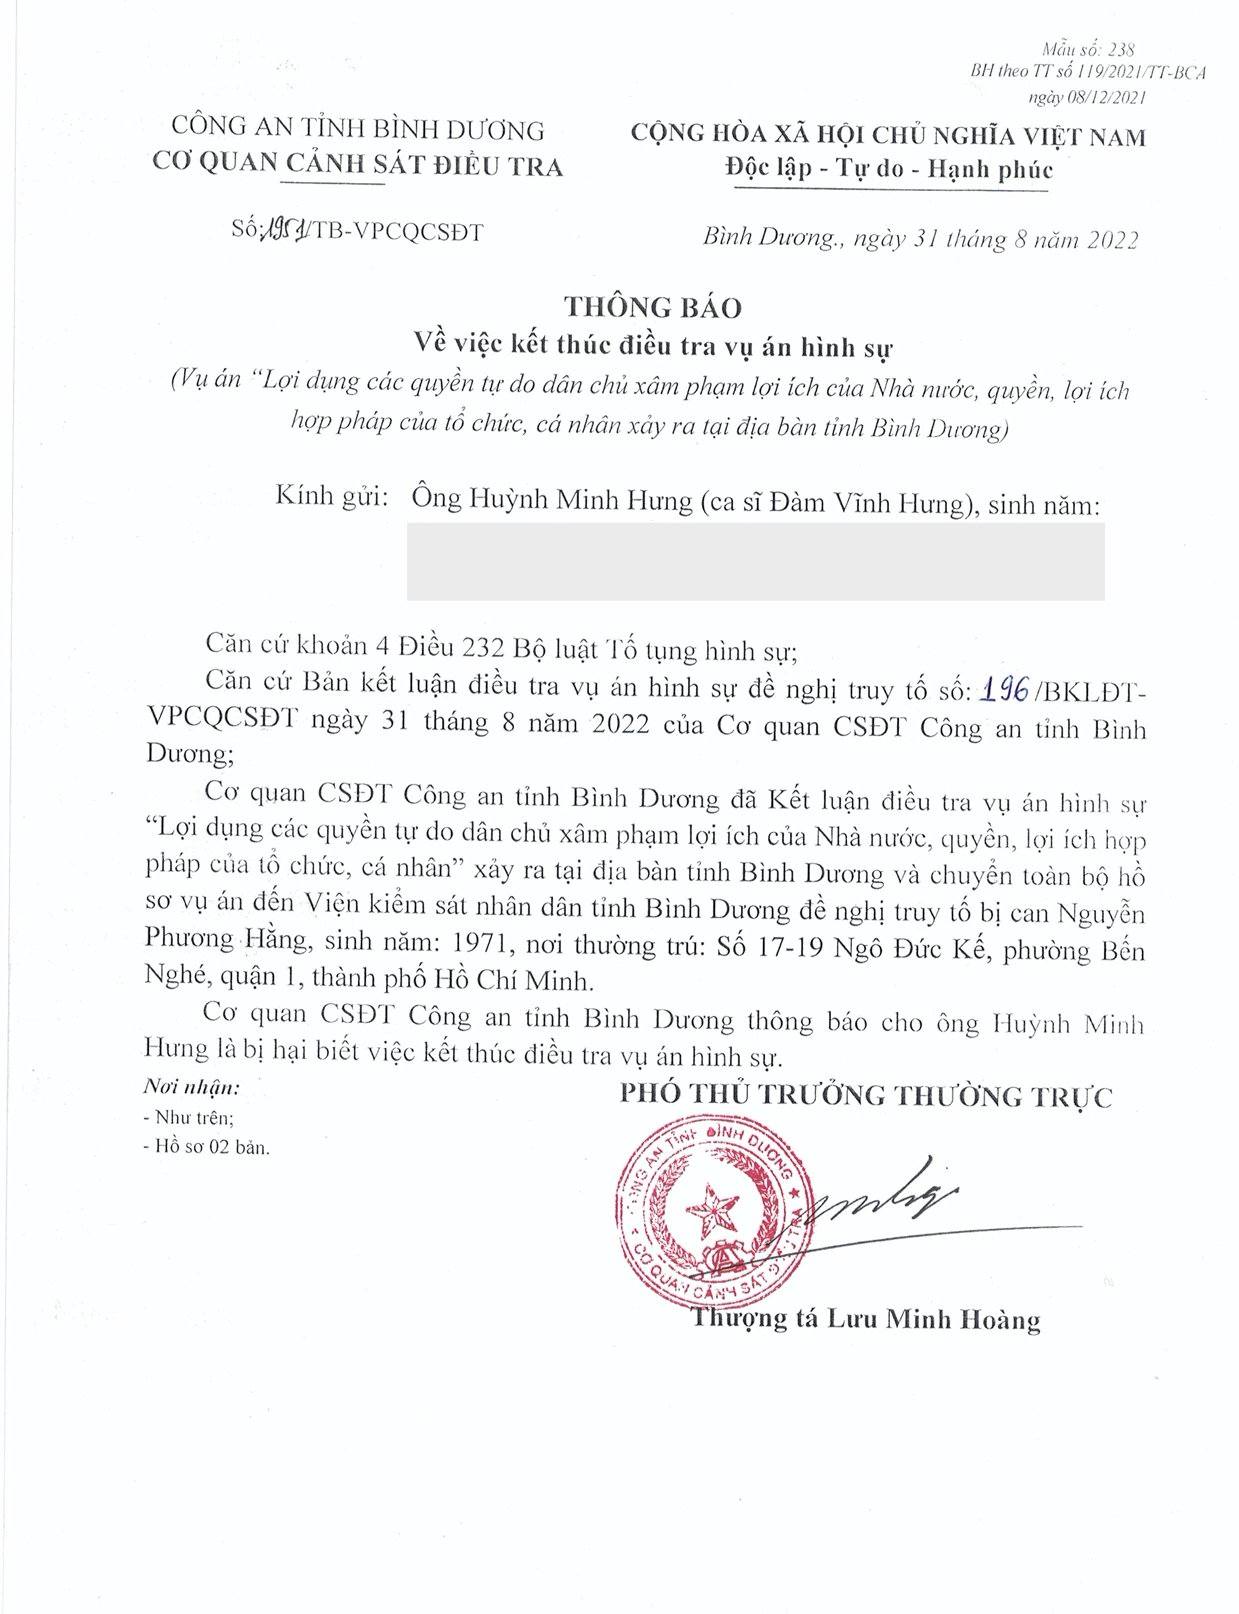 Đàm Vĩnh Hưng được xác định là Người bị hại, bà Phương Hằng bị đề nghị truy tố - Ảnh 2.